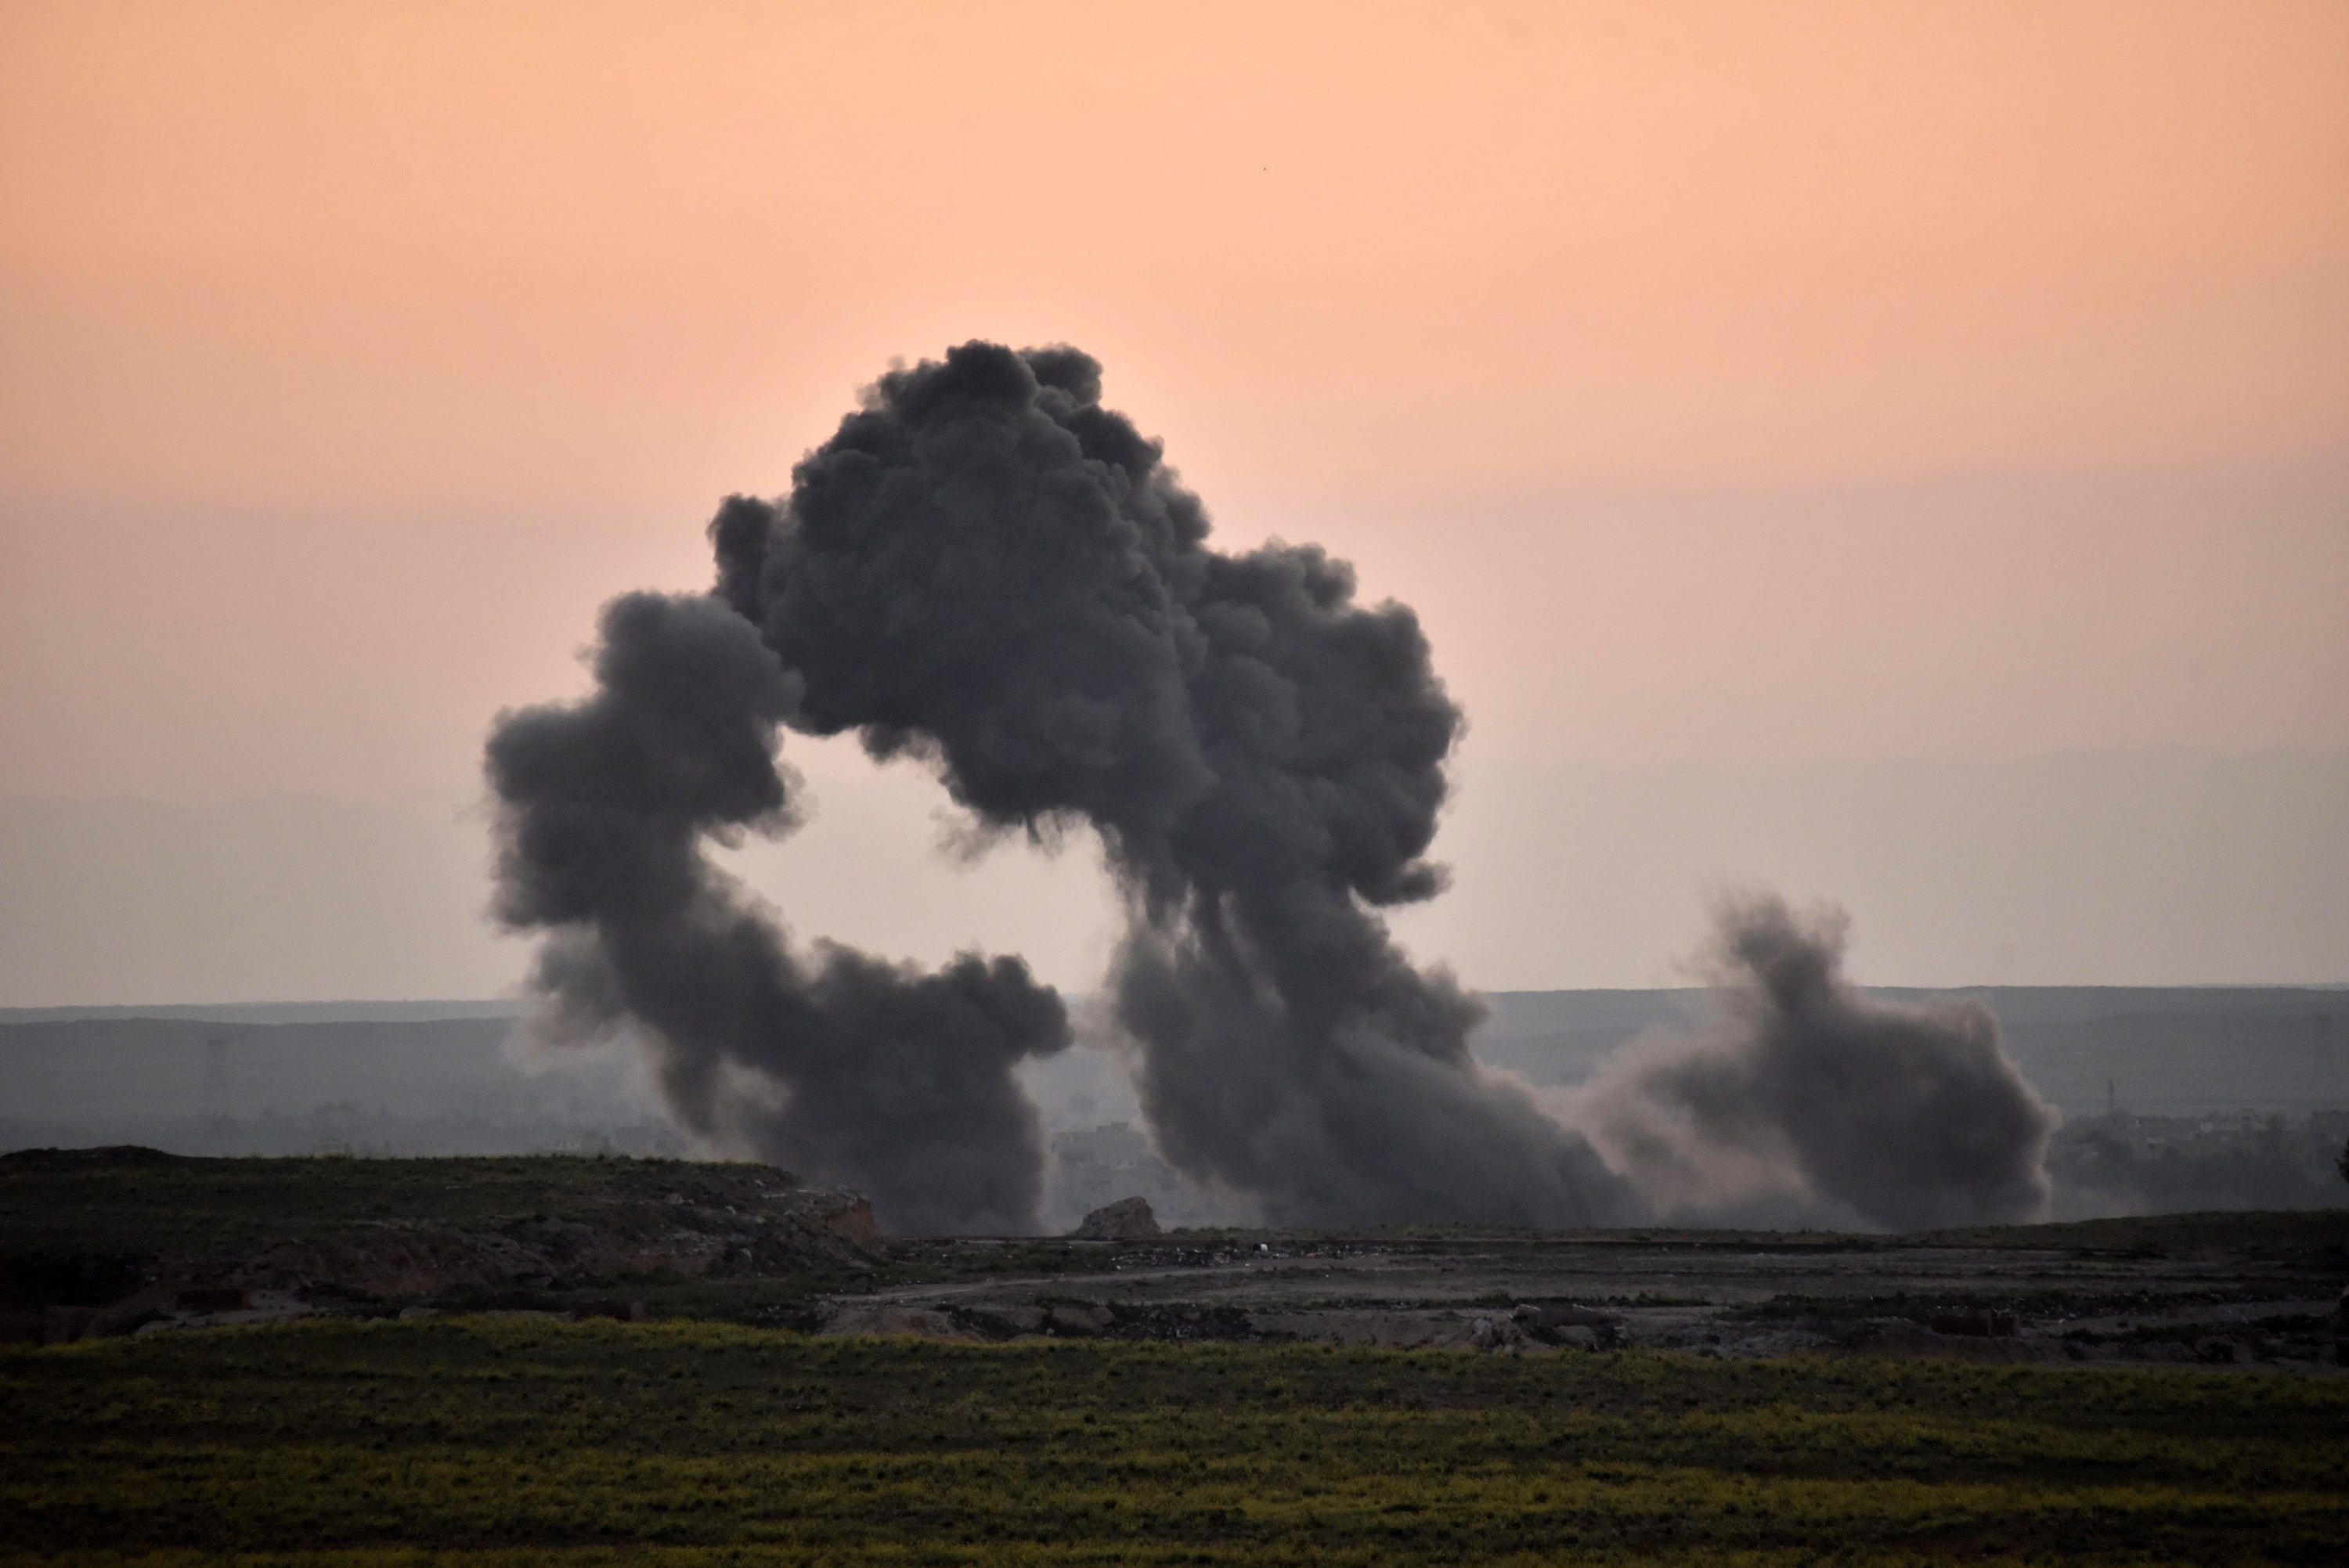 Vista general de una columna de humo después de un ataque aéreo de la coalición internacional contra el Estado Islámico, en una fotografía de archivo. EFE/Murtaja Lateef 